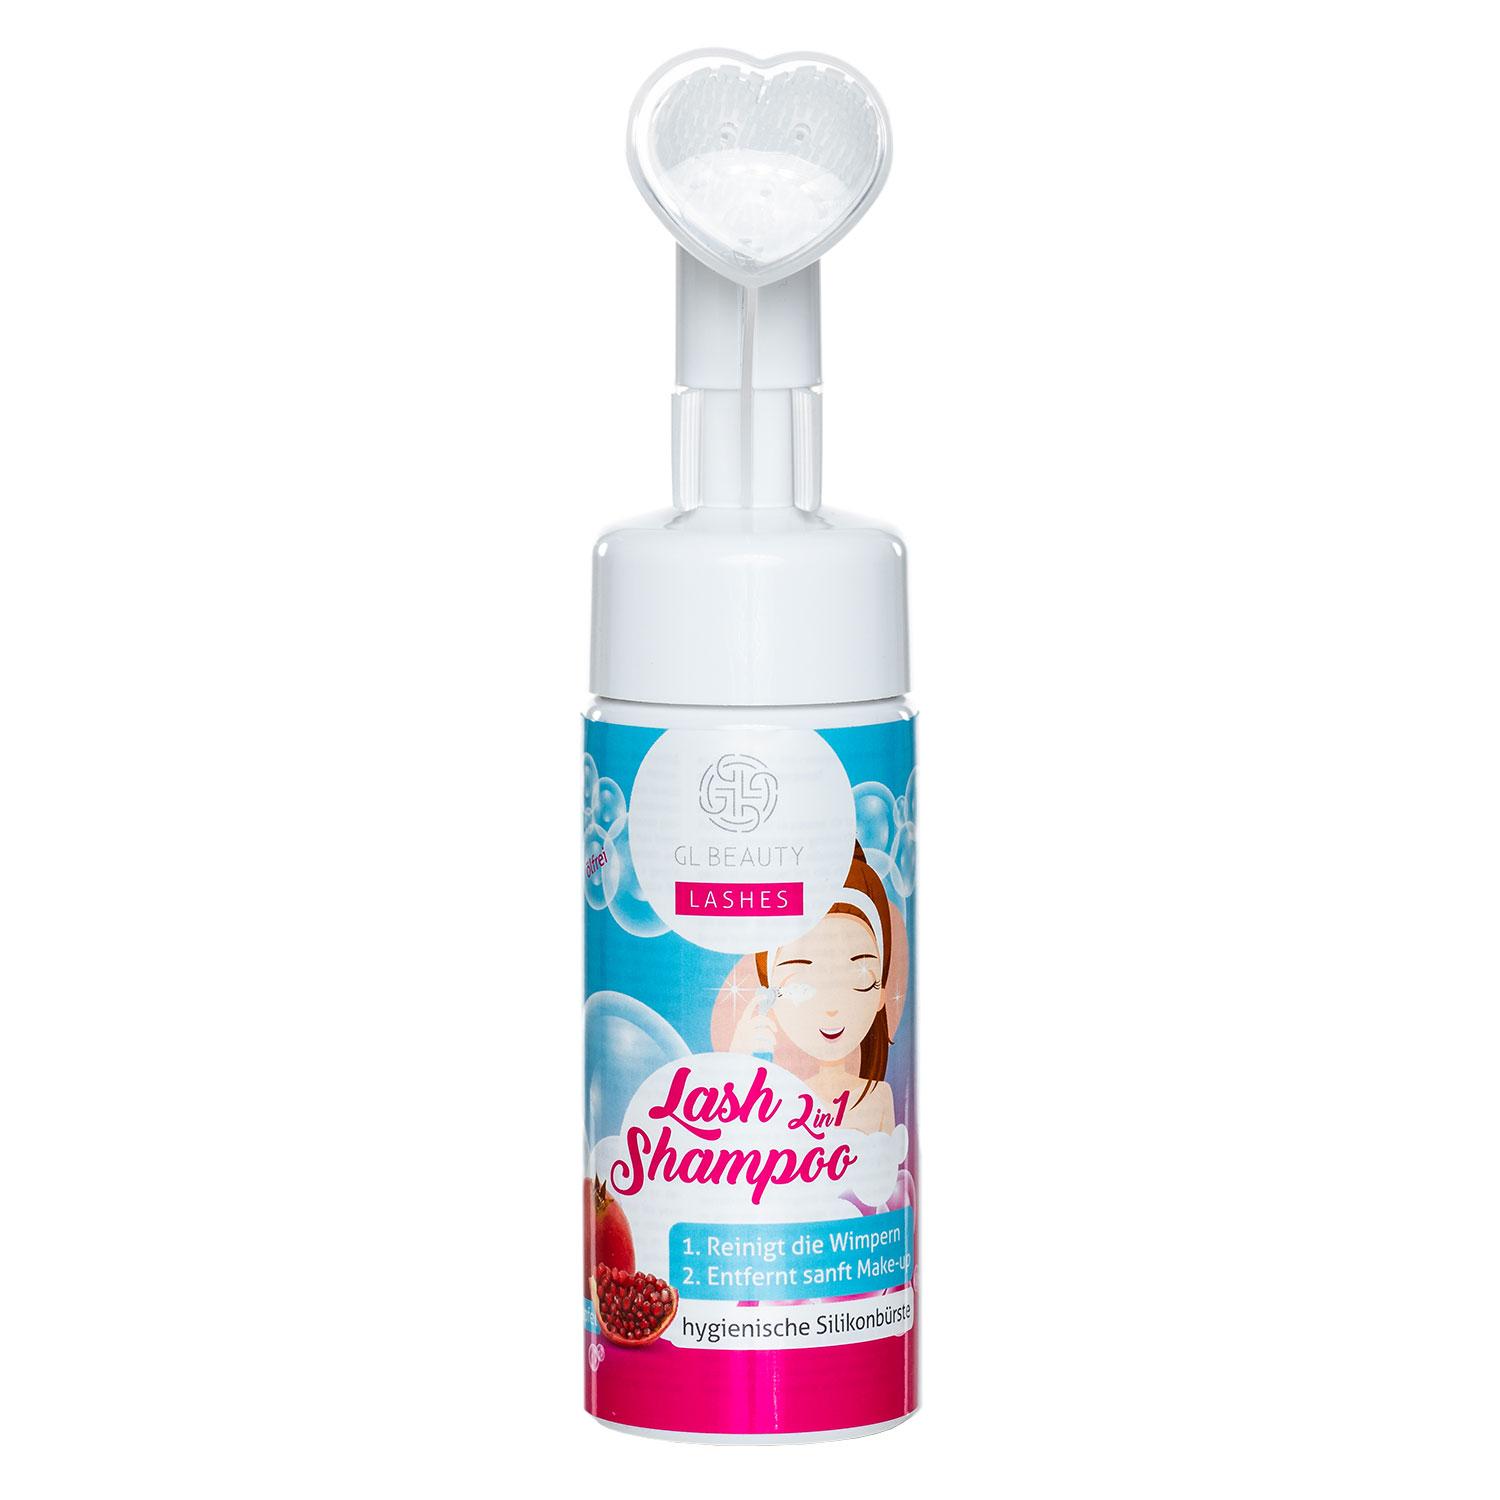 GL Beautycompany - Lash Shampoo 2in1 Pomegranate